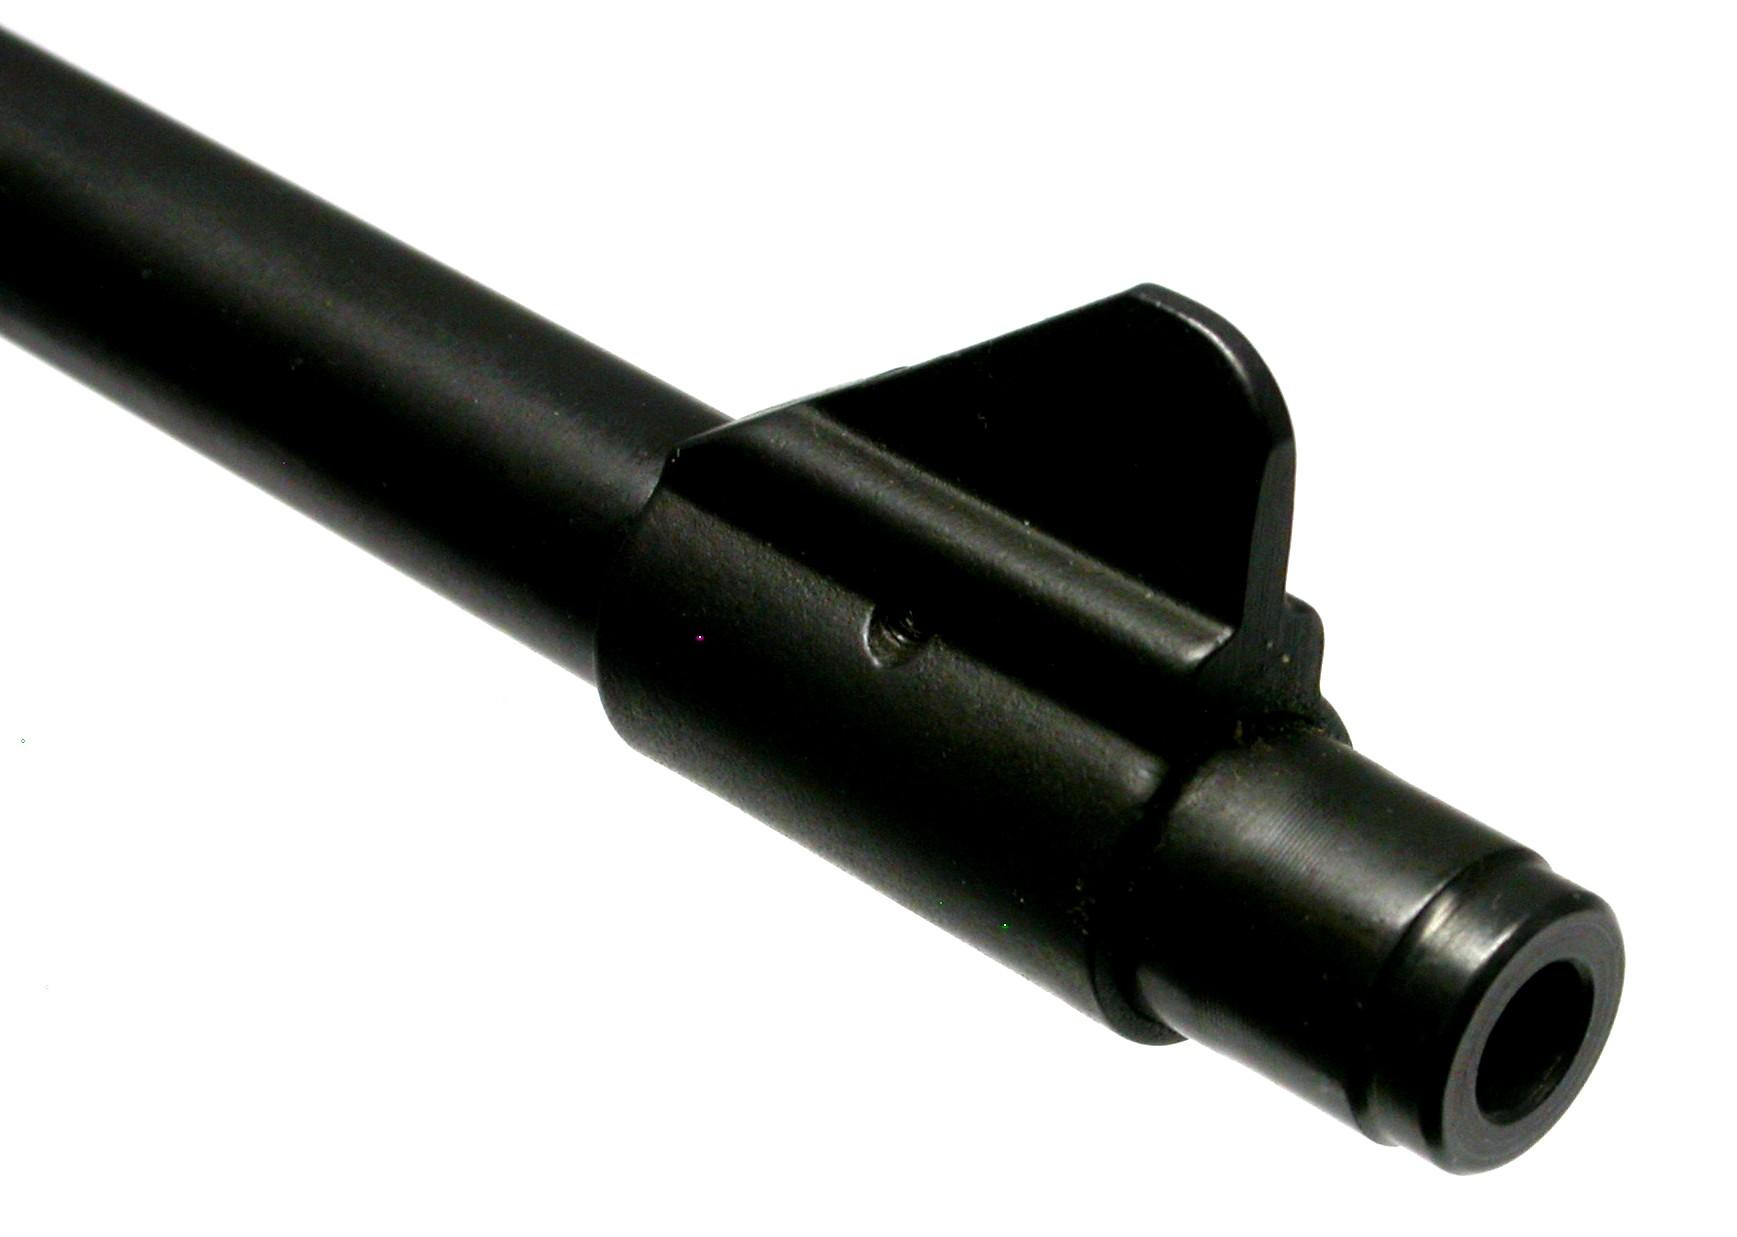 Ruger Mini-30 7.62x39 Semi-Automatic Carbine - FFL #189-10760 (JGD)